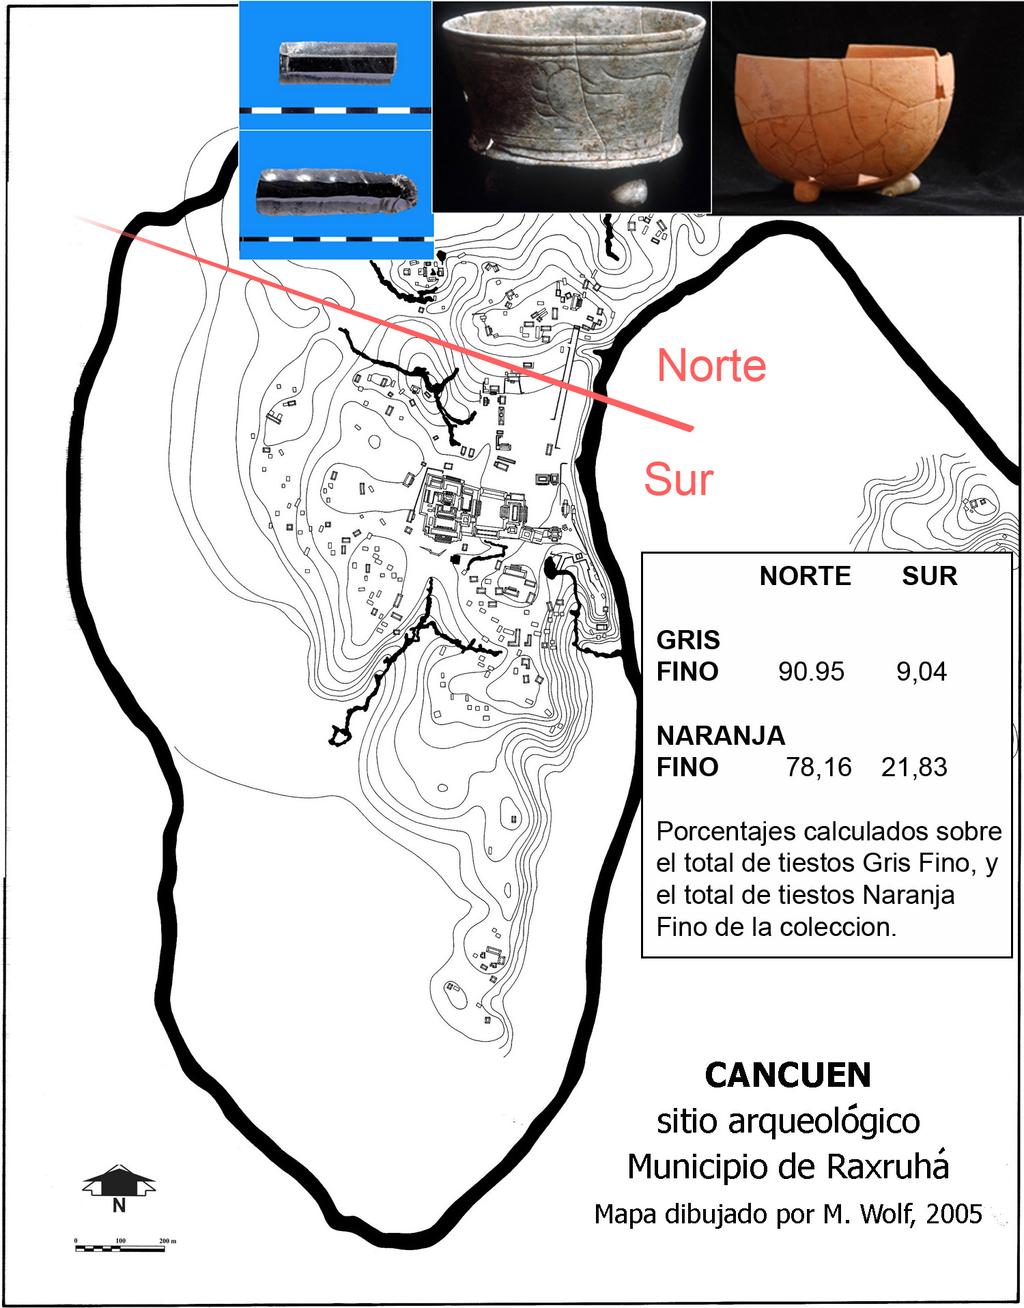 Forné et al. 55 Figure 3. Distribución de la cerámica Gris Fino y Naranja Fino dentro de Cancuén.